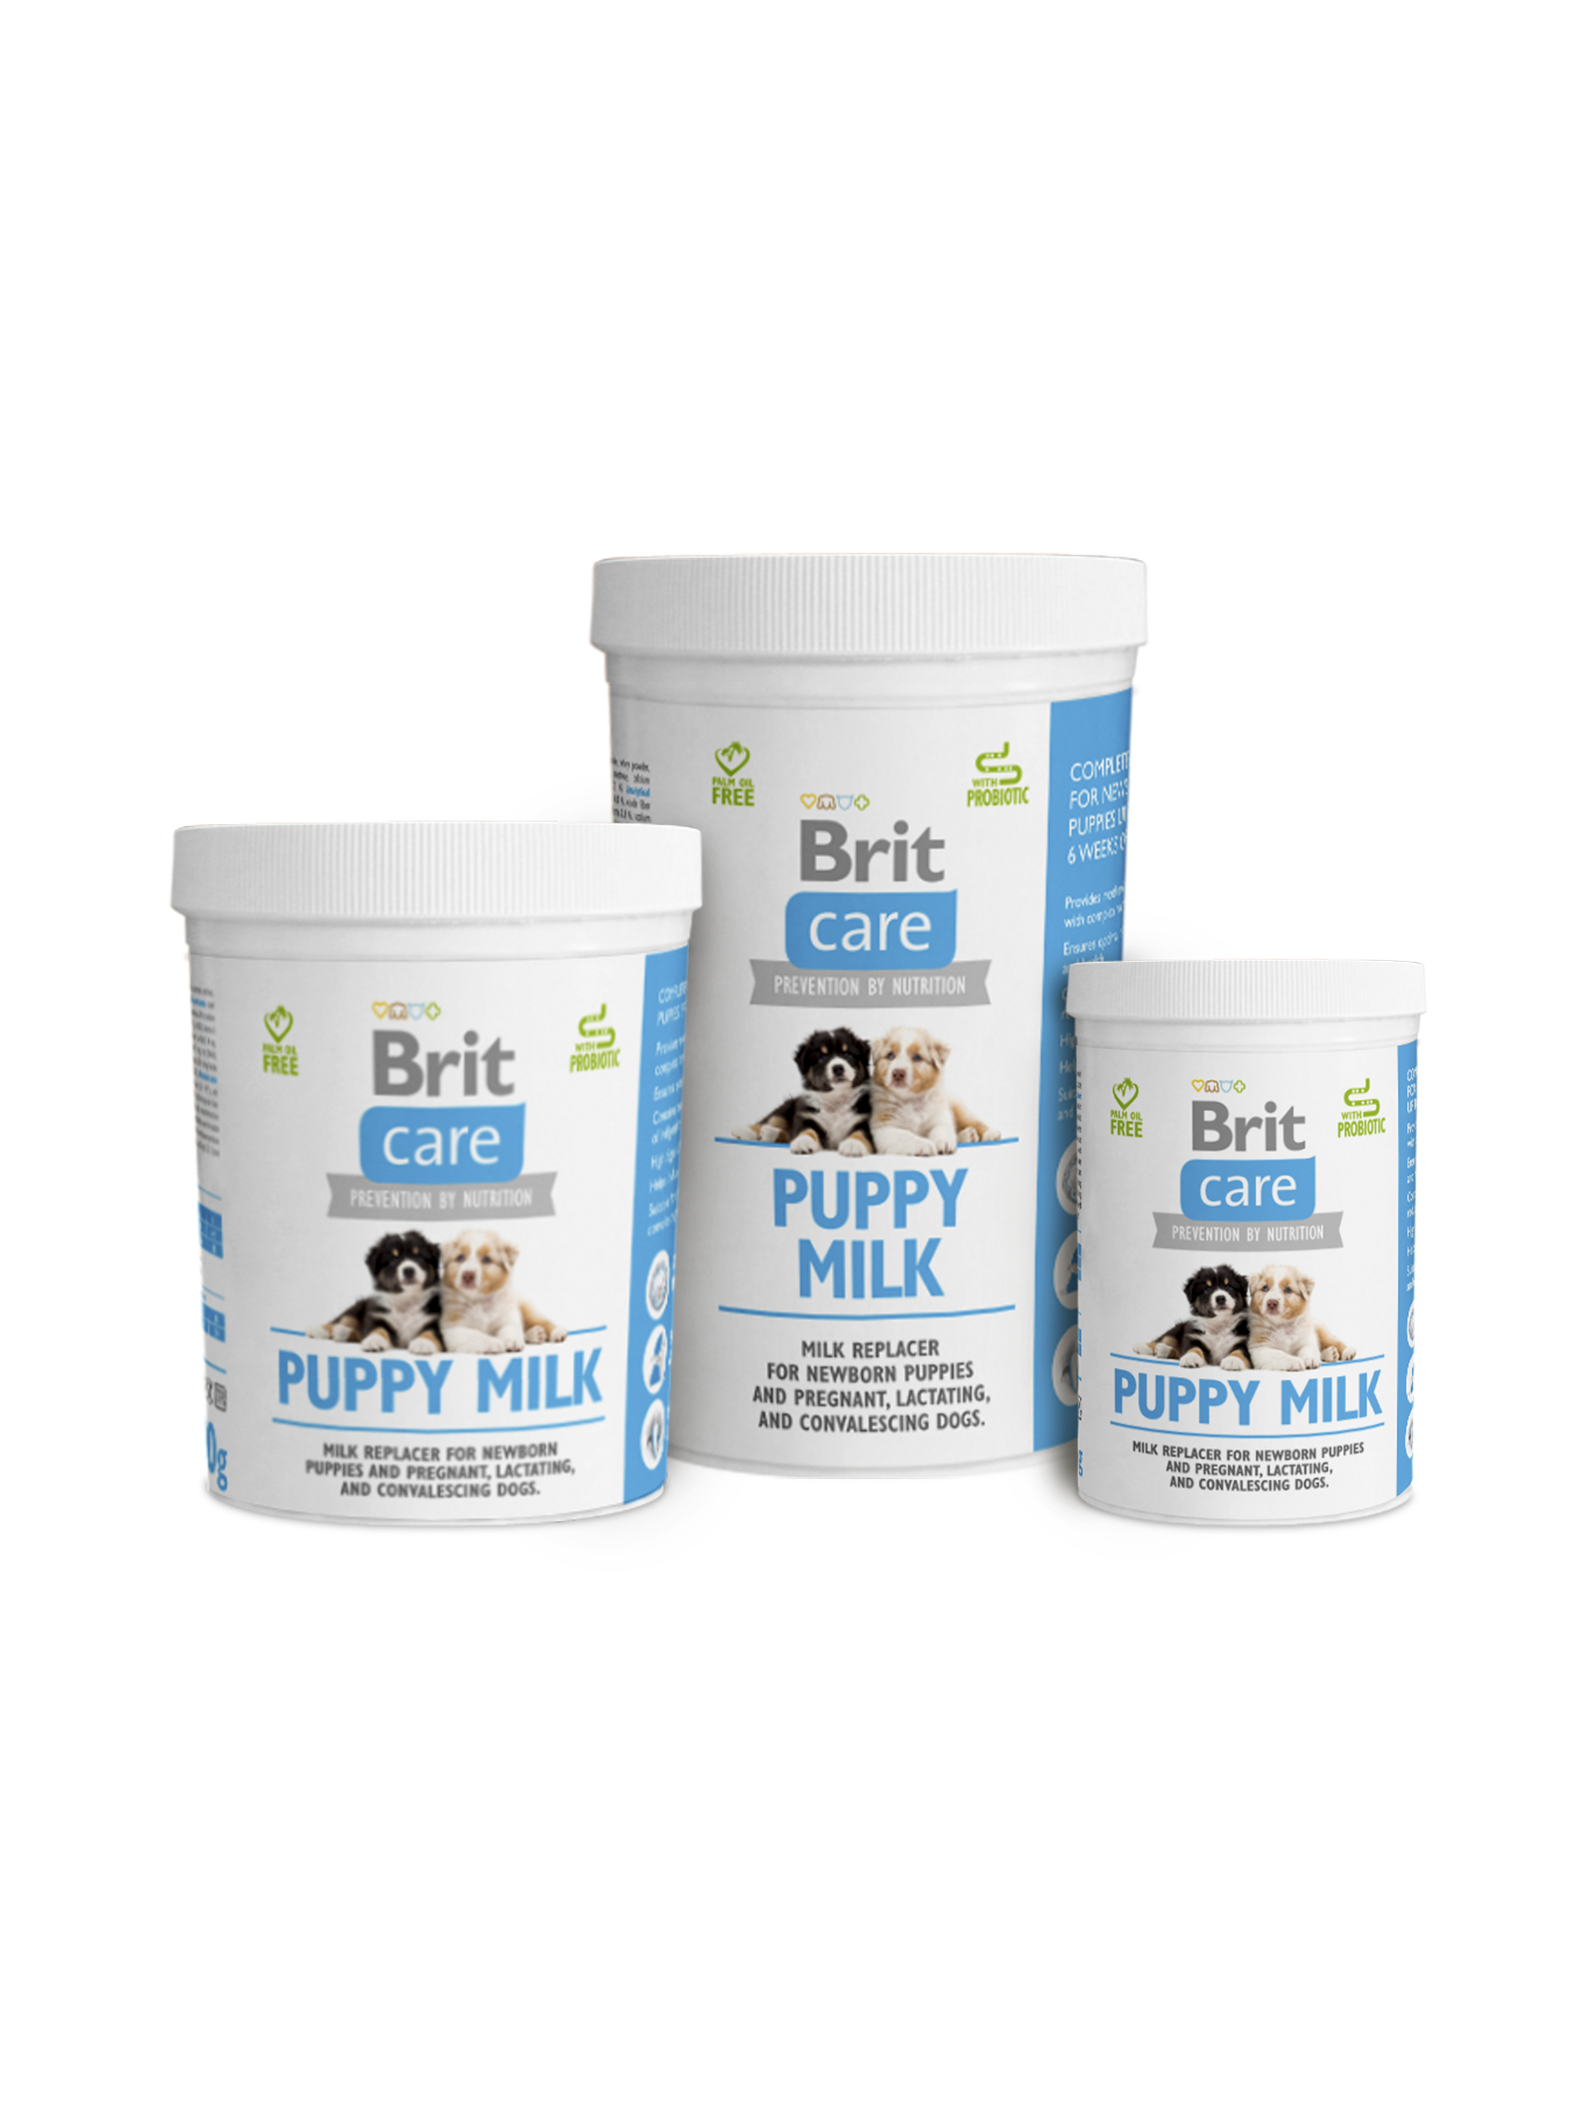 Brit care puppy milk 500g